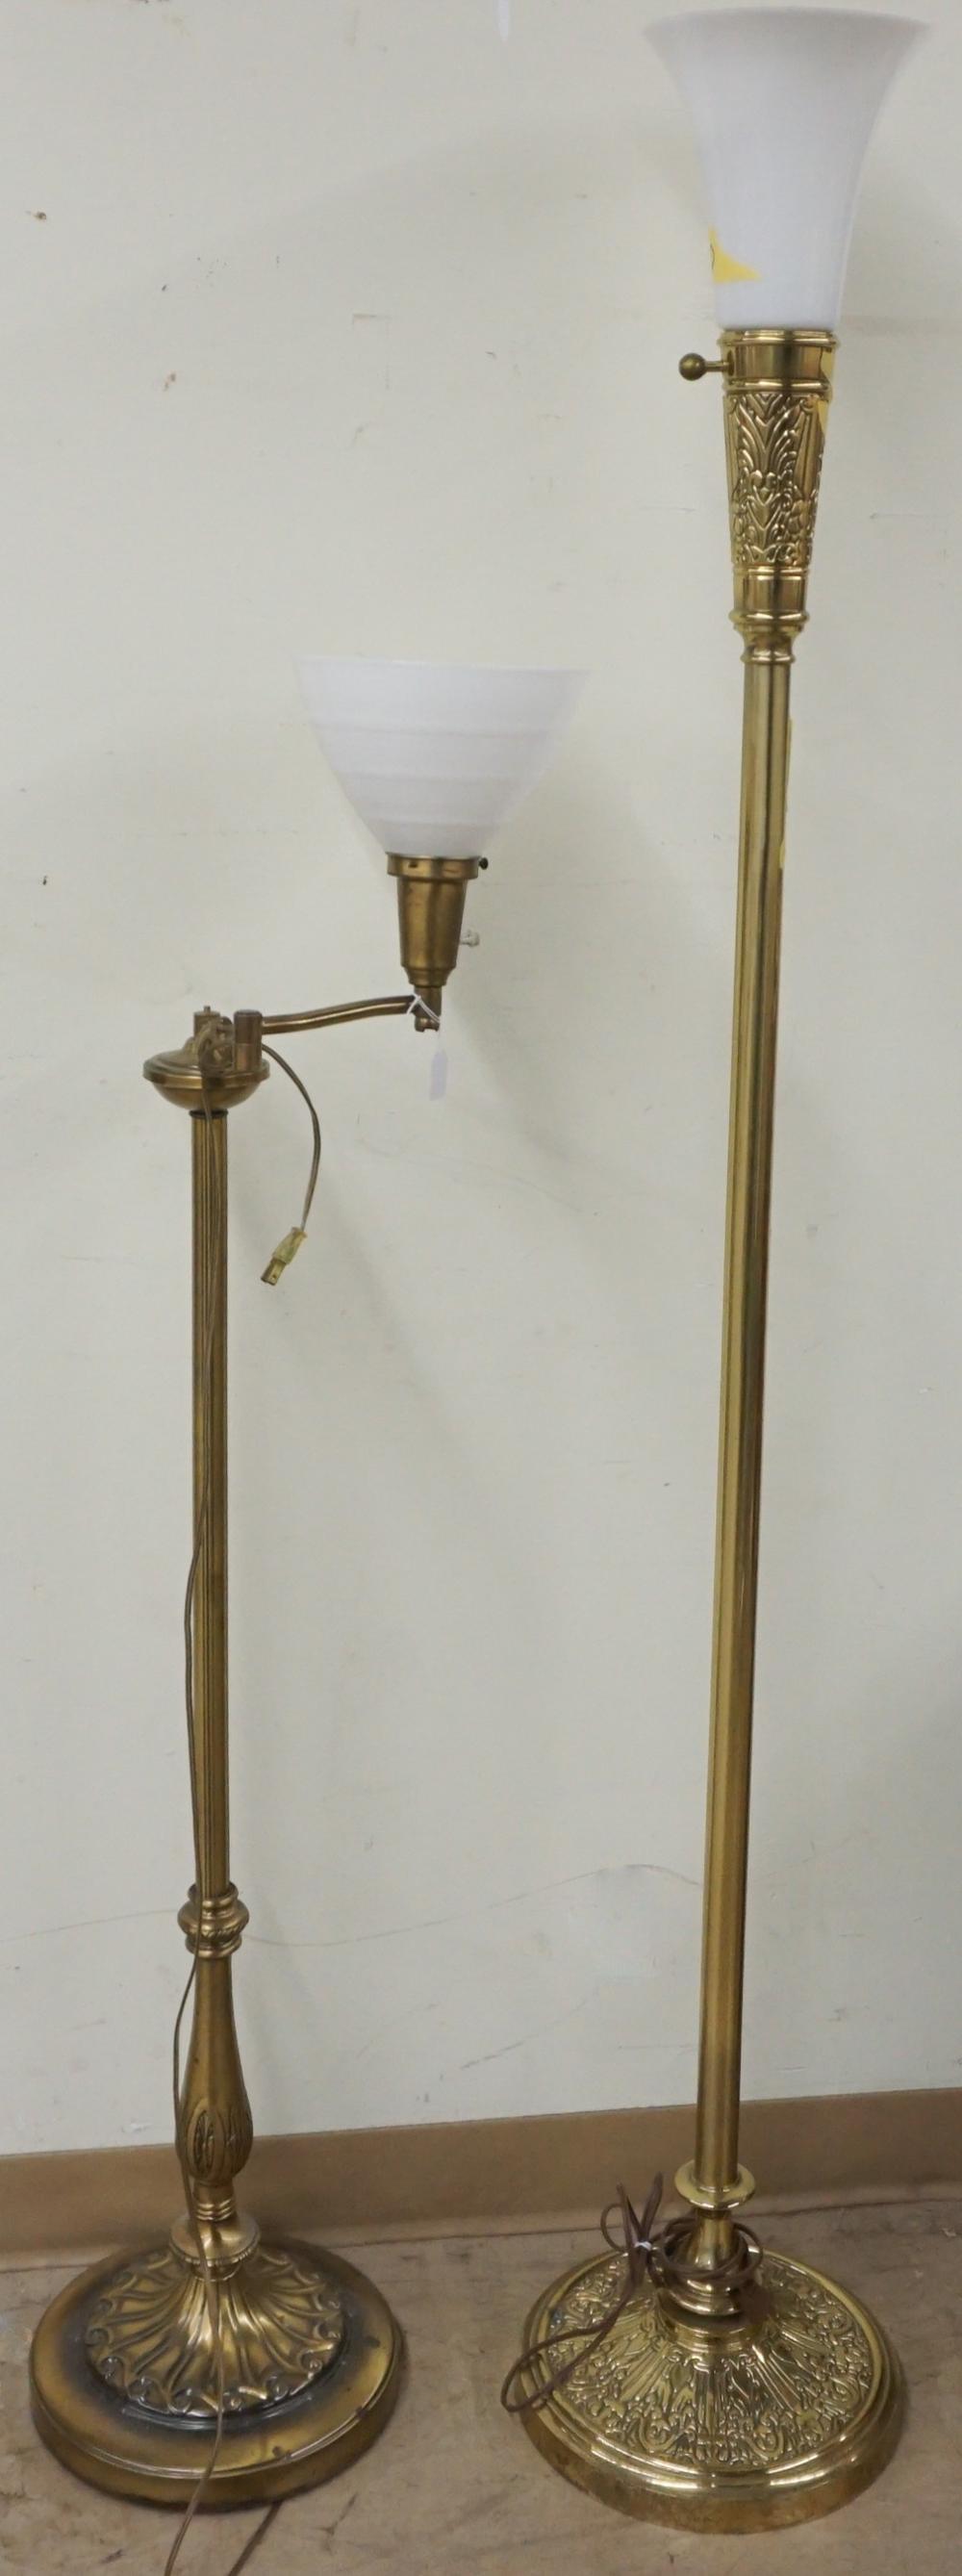 TWO BRASS FLOOR LAMPSTwo Brass